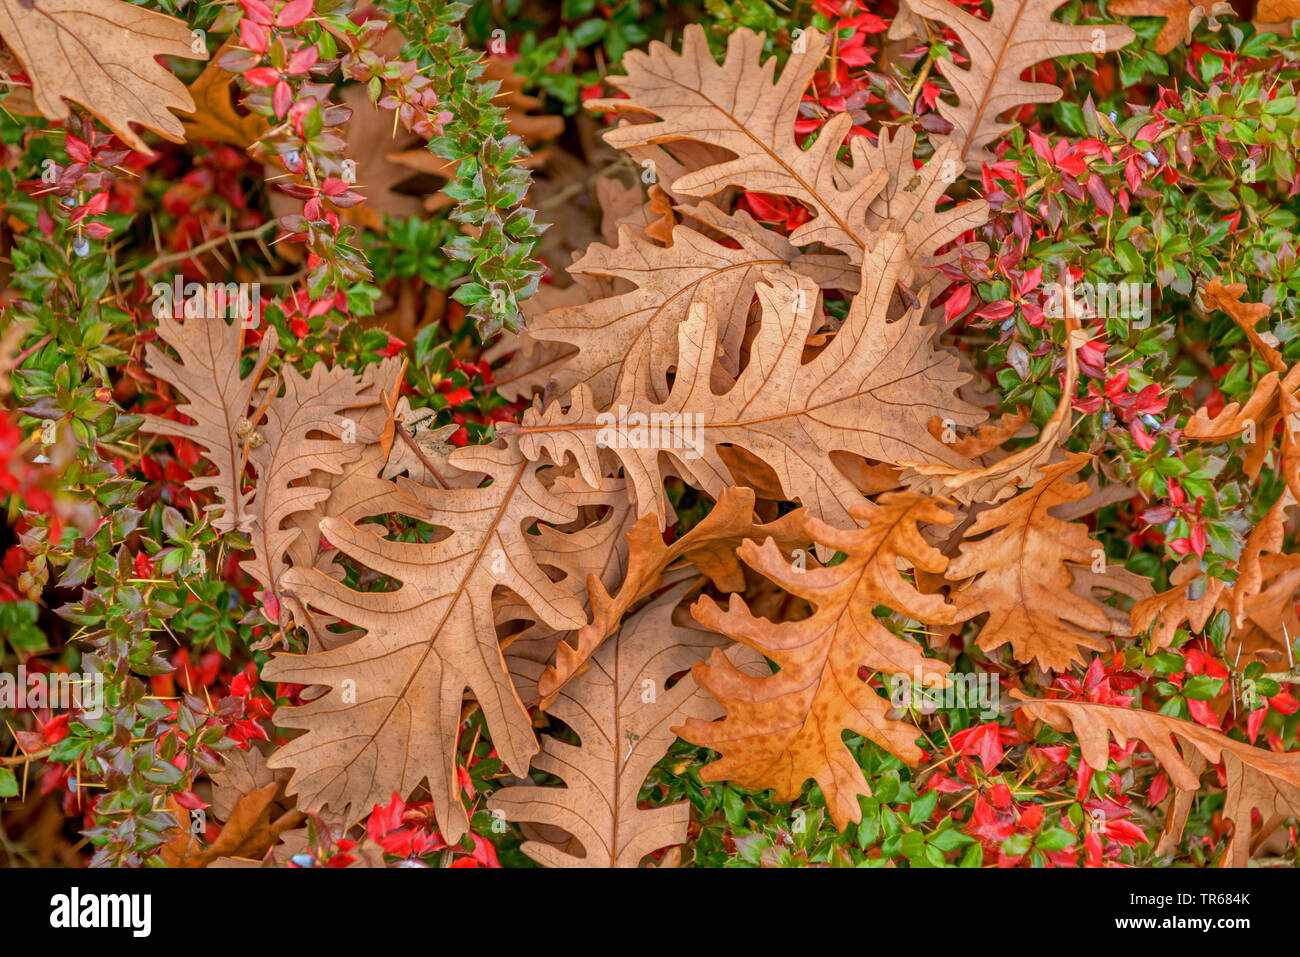 Húngaro, Italiano de roble (Quercus frainetto, Quercus conferta, Quercus pannonica), hojas de otoño sobre la tierra, Alemania, en el Estado federado de Sajonia-Anhalt Foto de stock